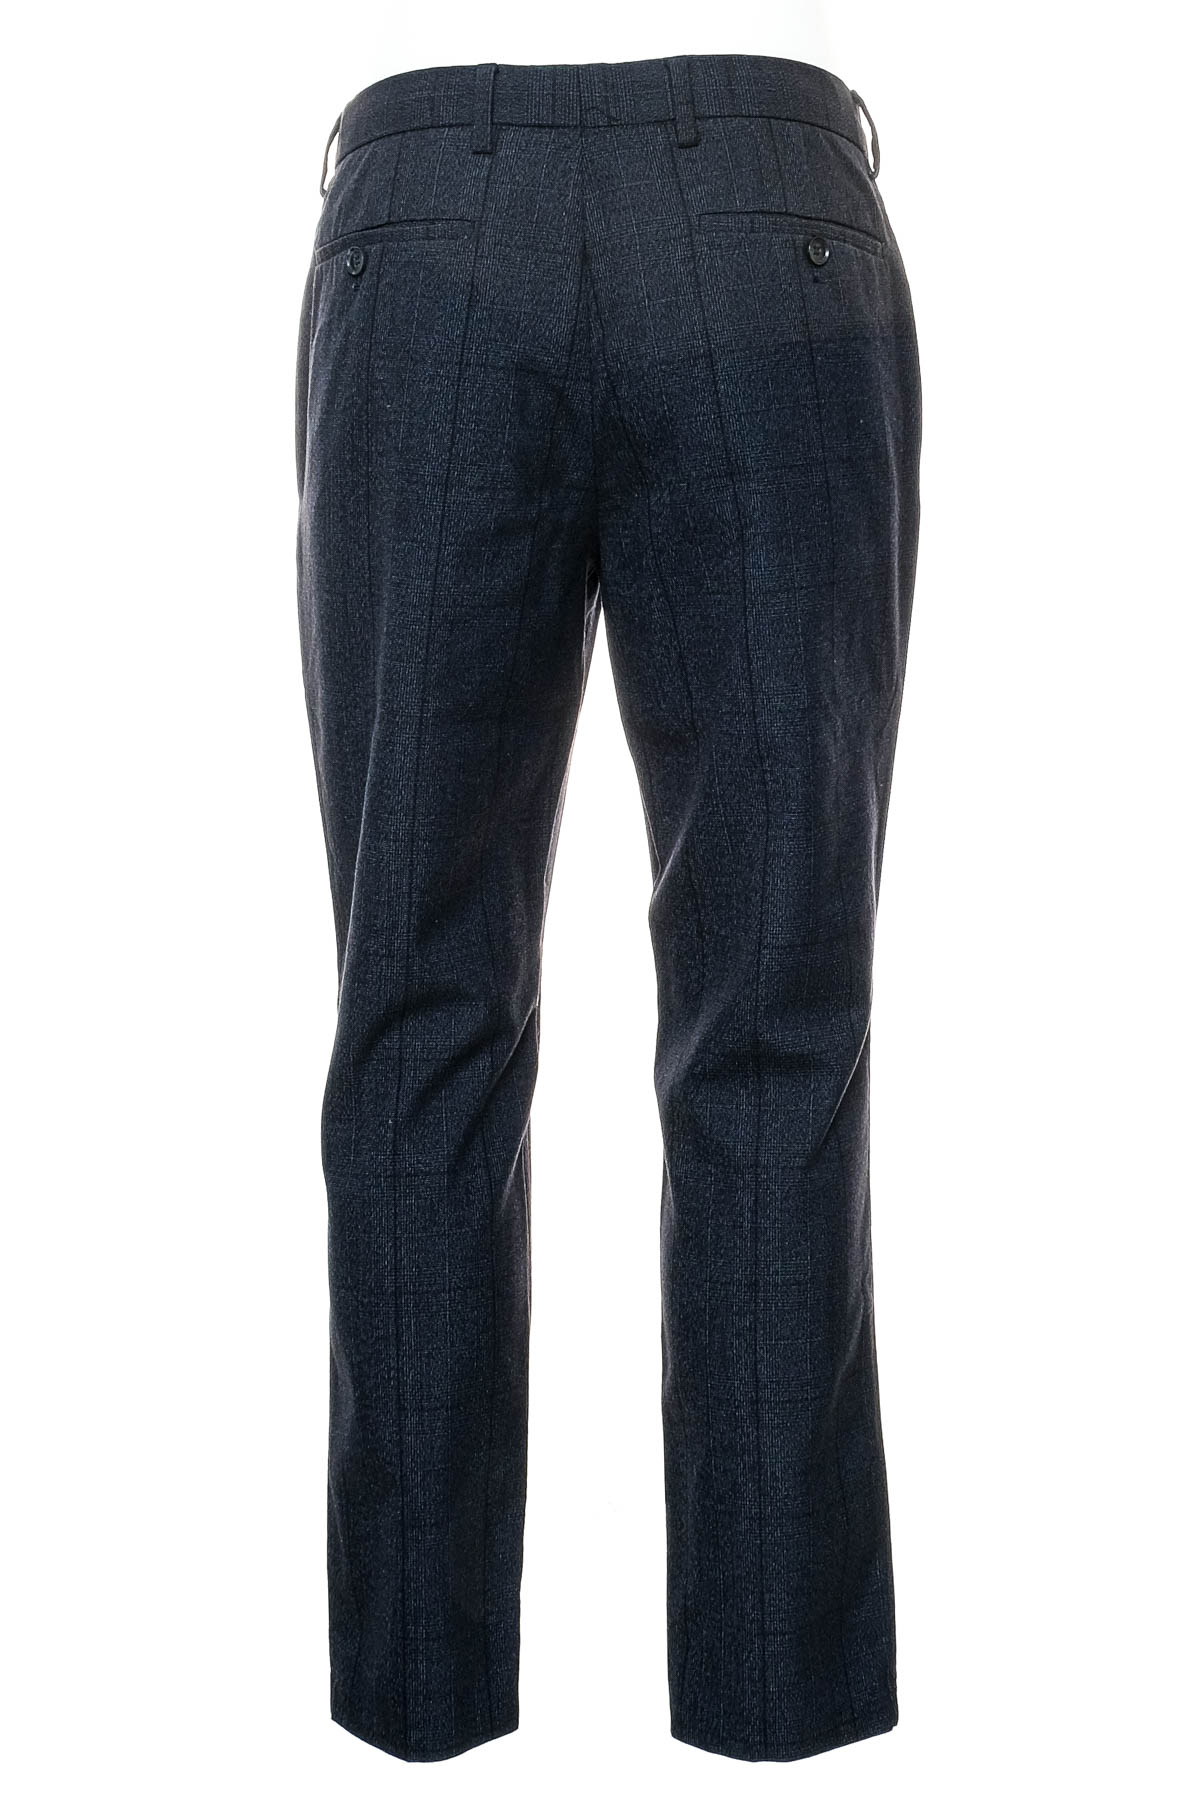 Pantalon pentru bărbați - PRIMARK - 1